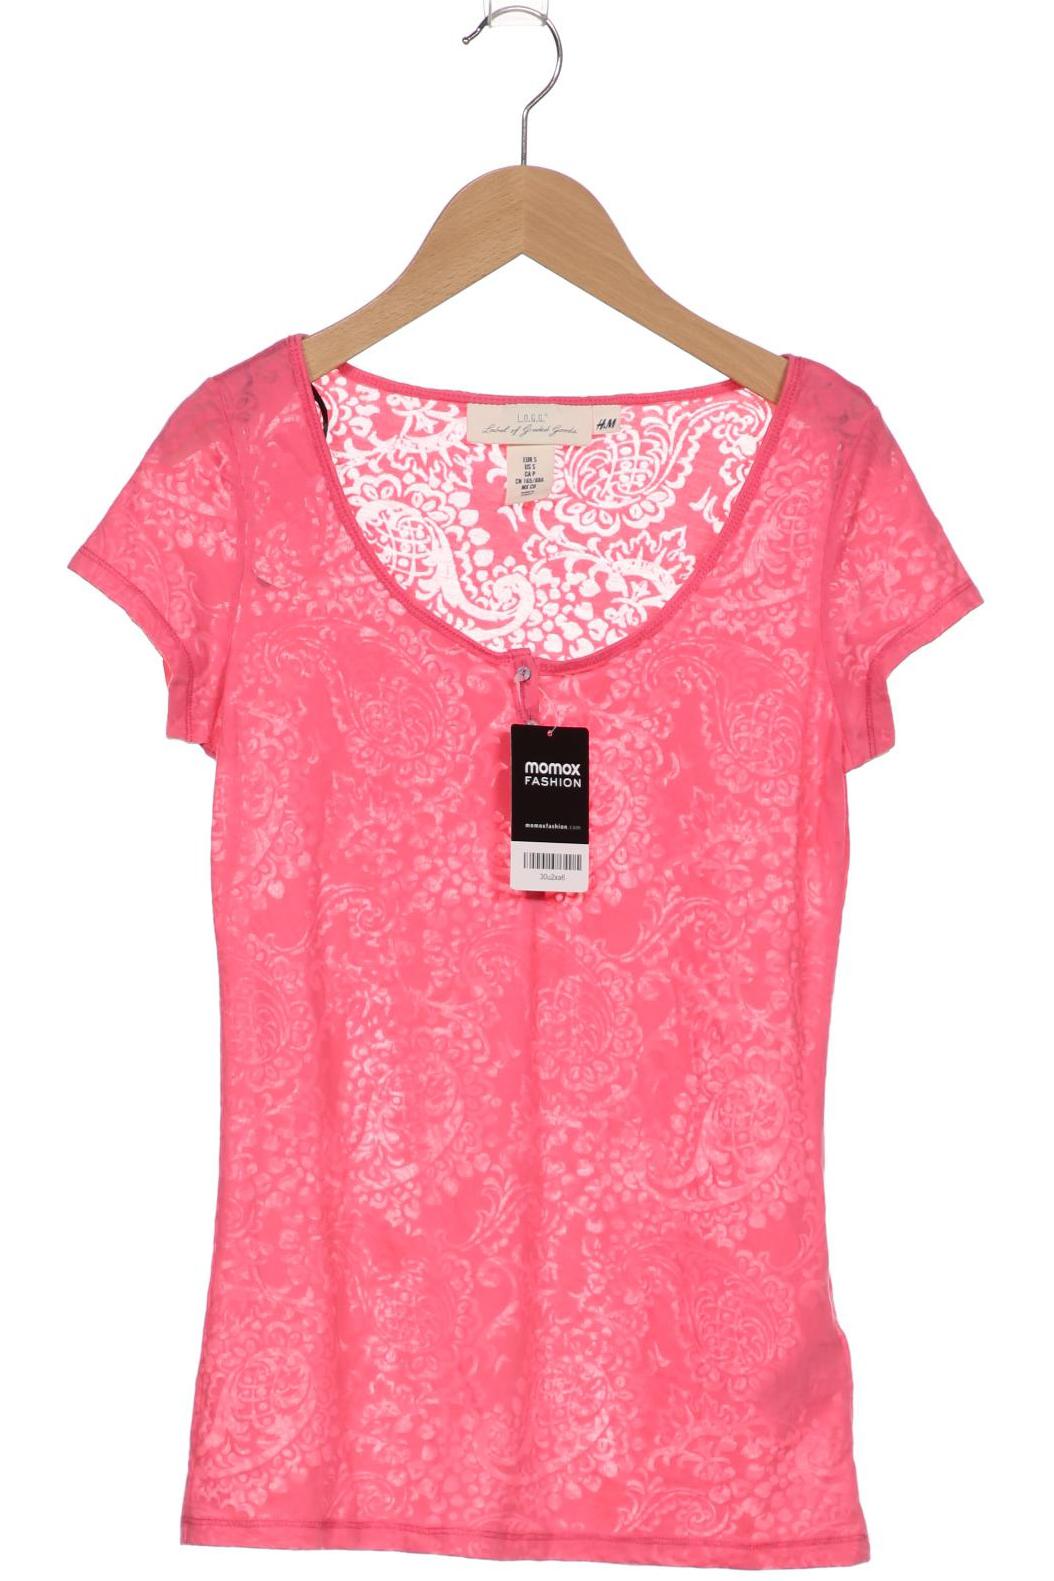 H&M Damen T-Shirt, pink, Gr. 36 von H&M